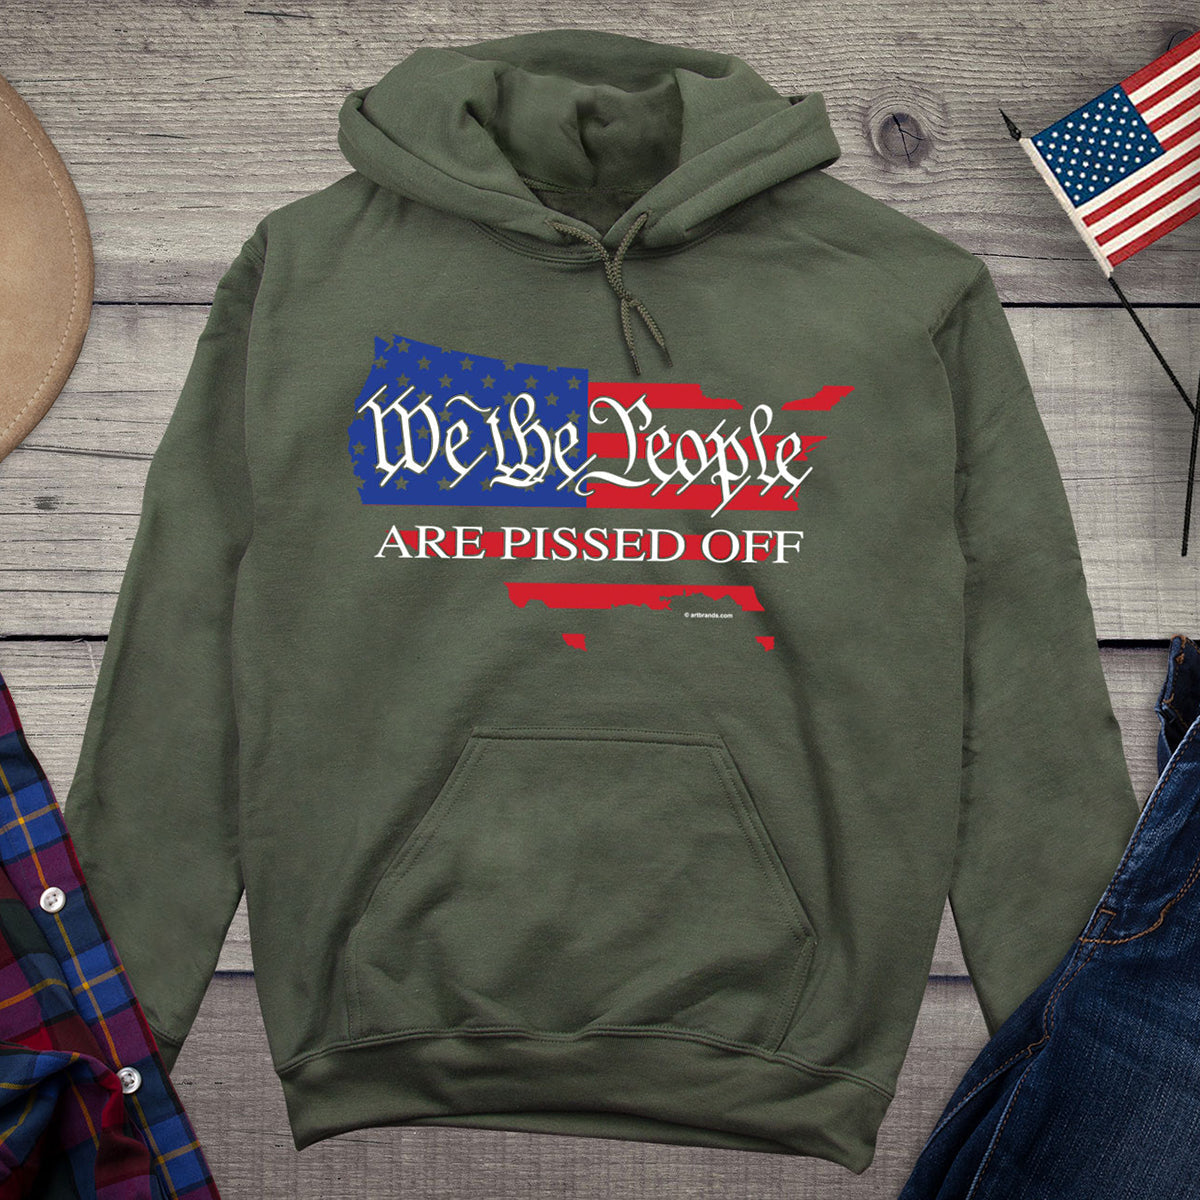 We The People Are Pissed Flag Hoodie, American Pride Hooded Sweatshirt